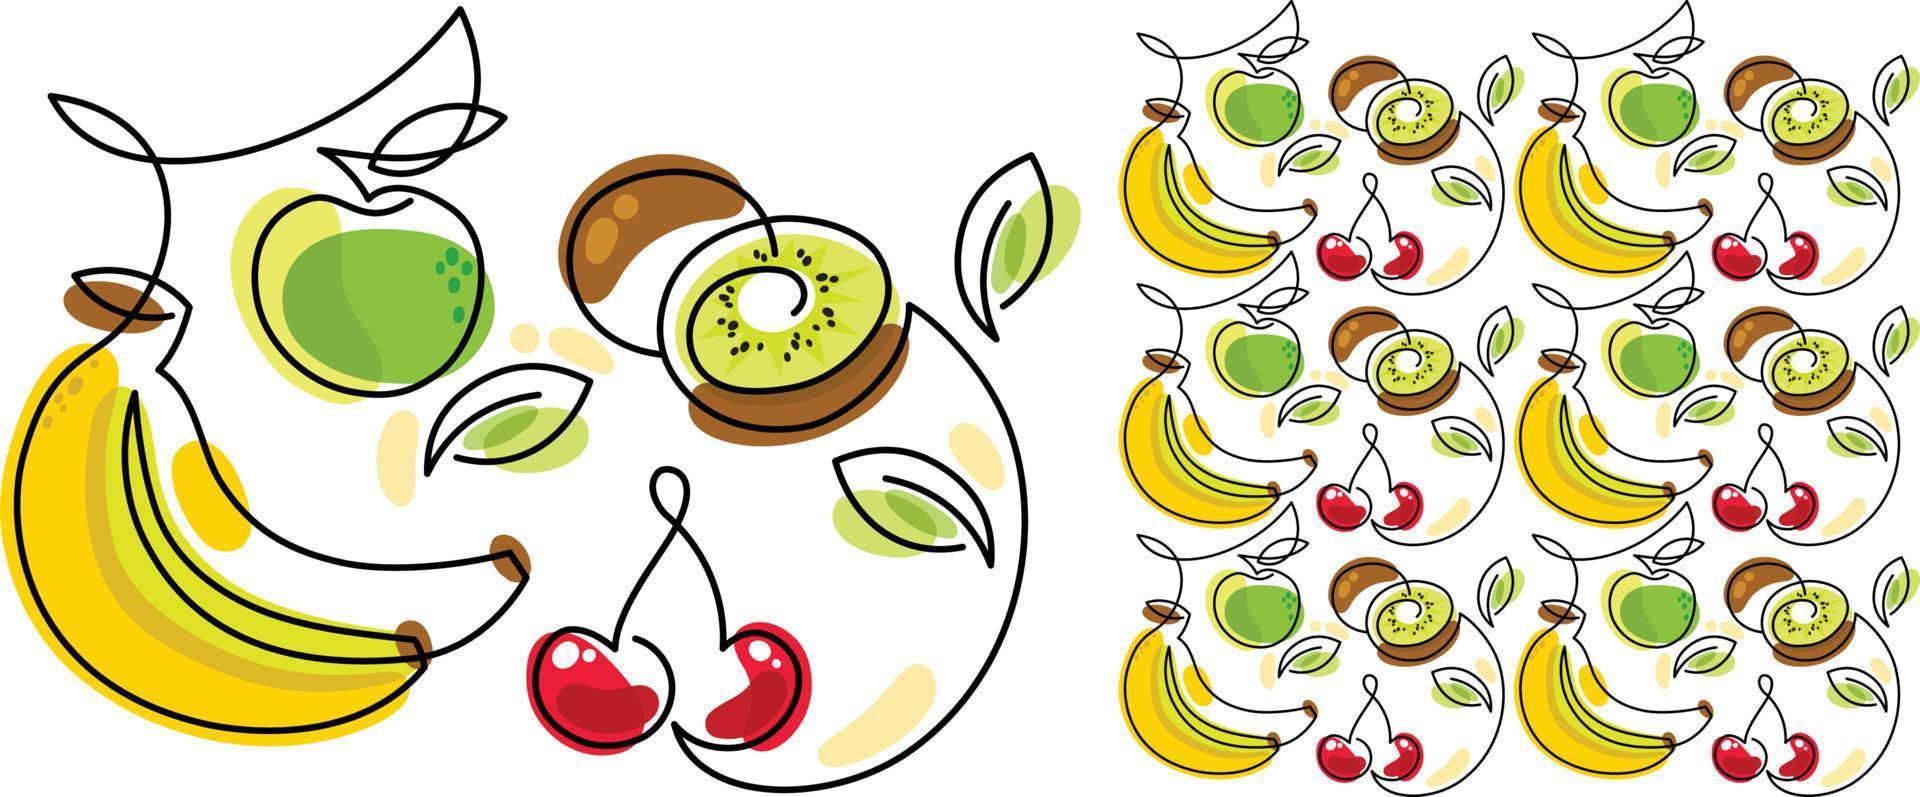 patrón repetitivo de plátano, kiwi, manzana y cereza. textura transparente vector